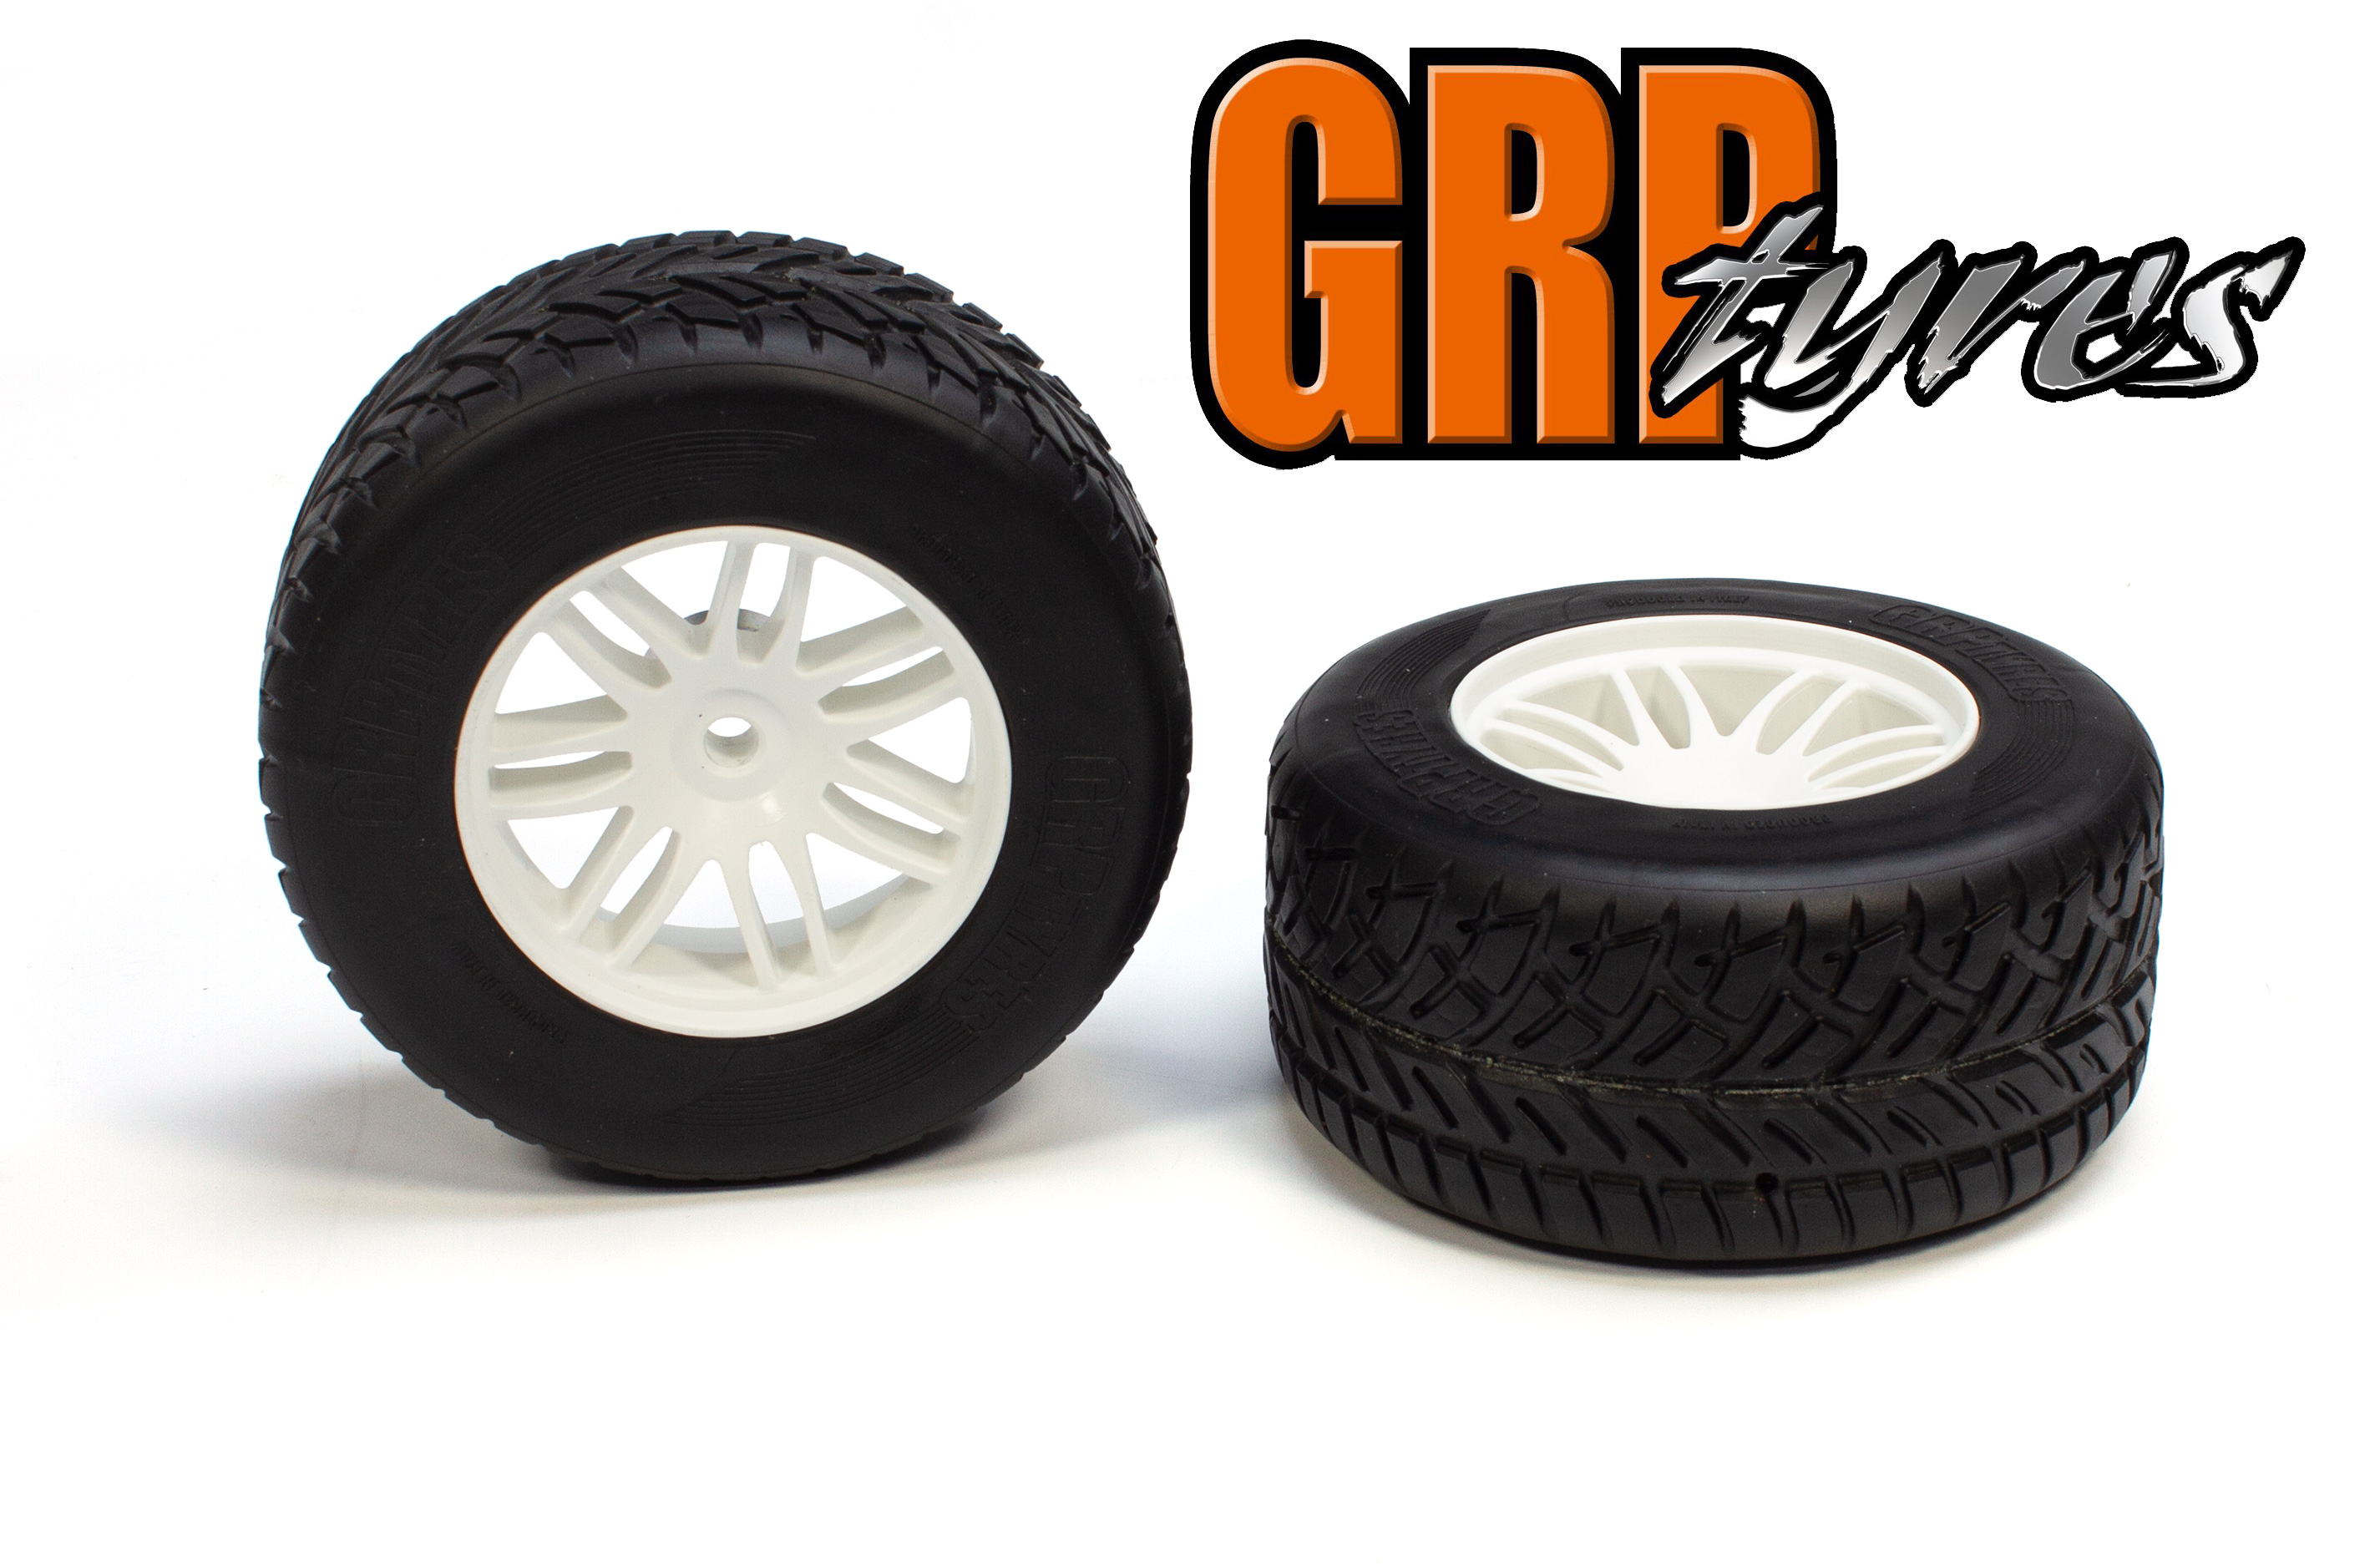 GWH33 XR1 Ellegi Formula 1 profile extra soft rain front tires, glued